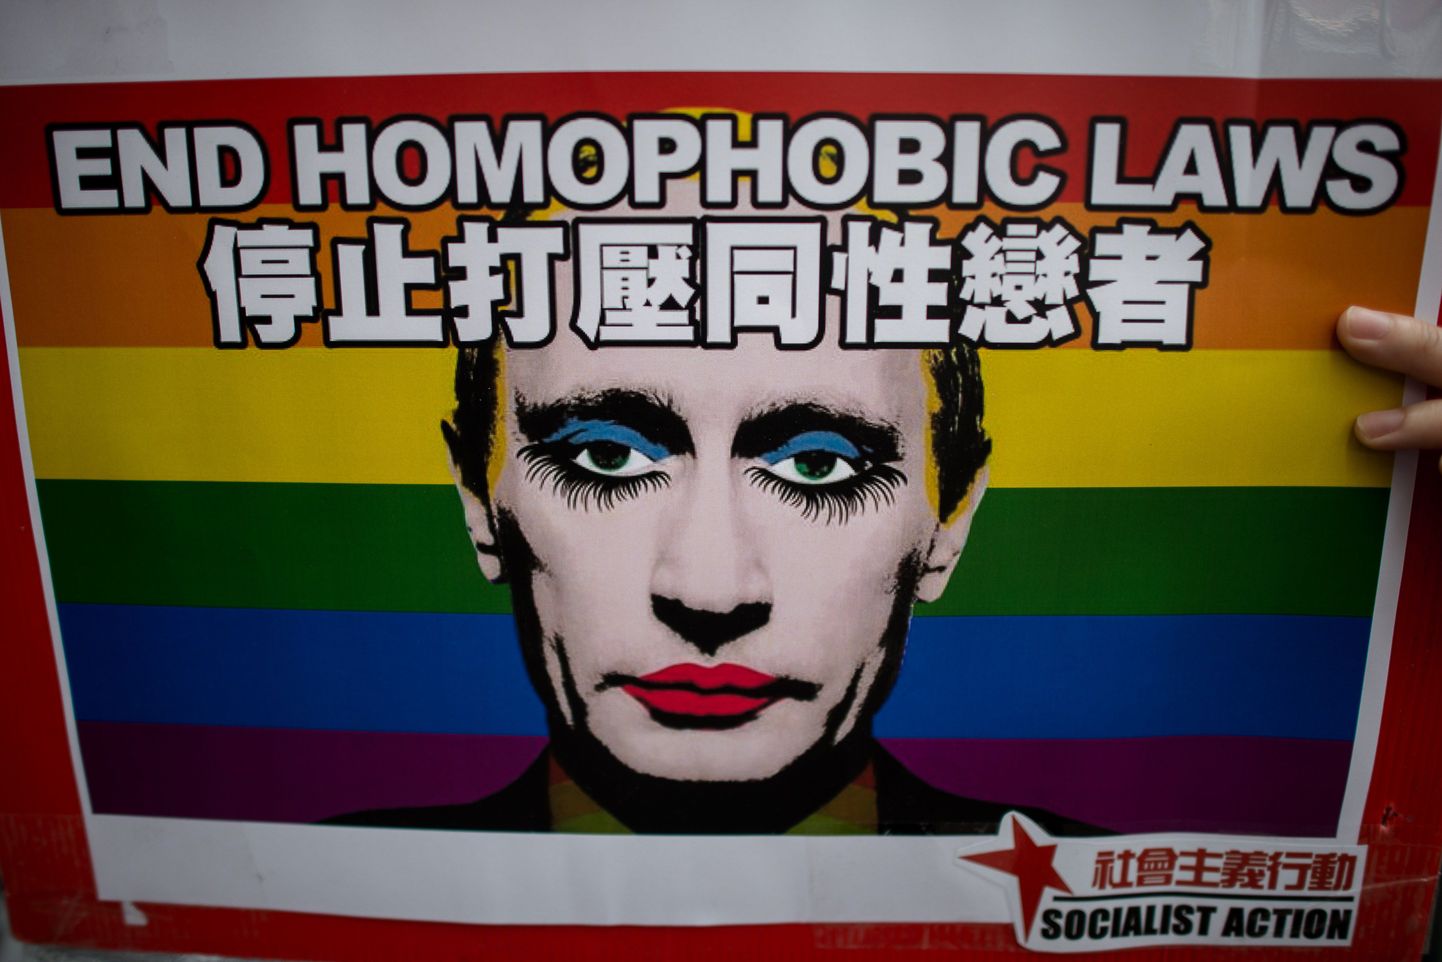 Российские власти сочли изображение намеком на нестандартную сексуальную ориентацию Путина.